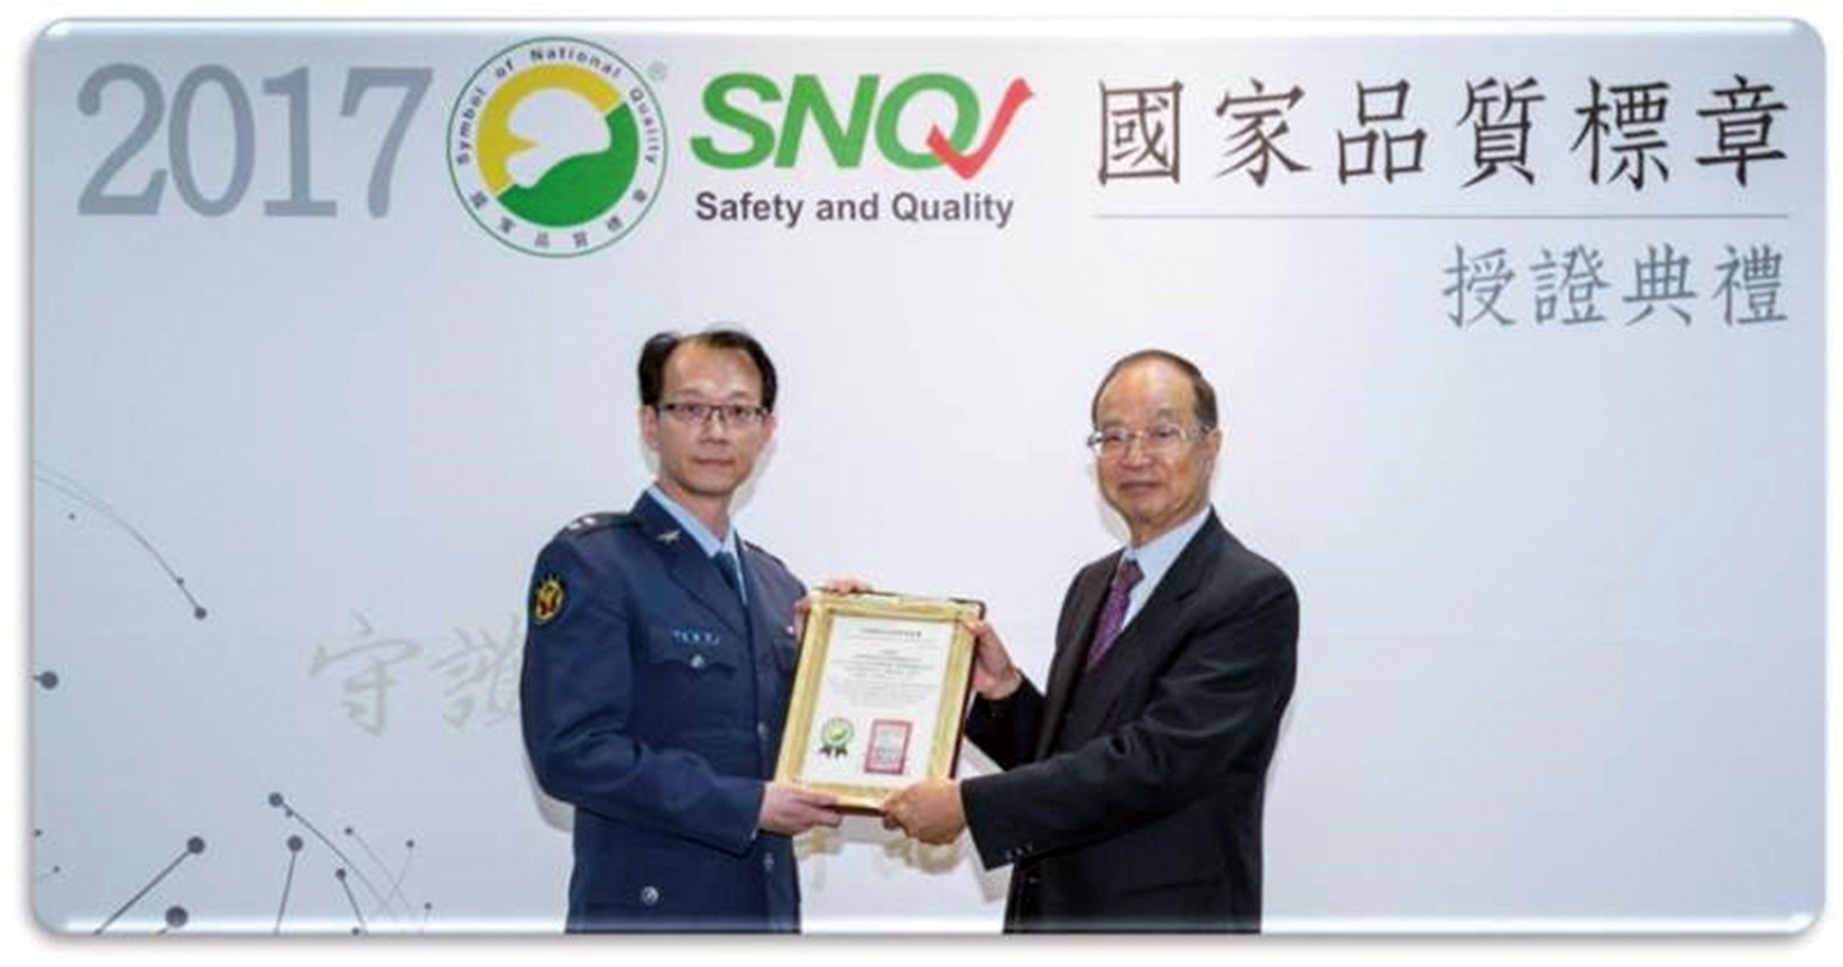 親子鑑定實驗室榮獲2017年國家品質標章SNQ的肯定01